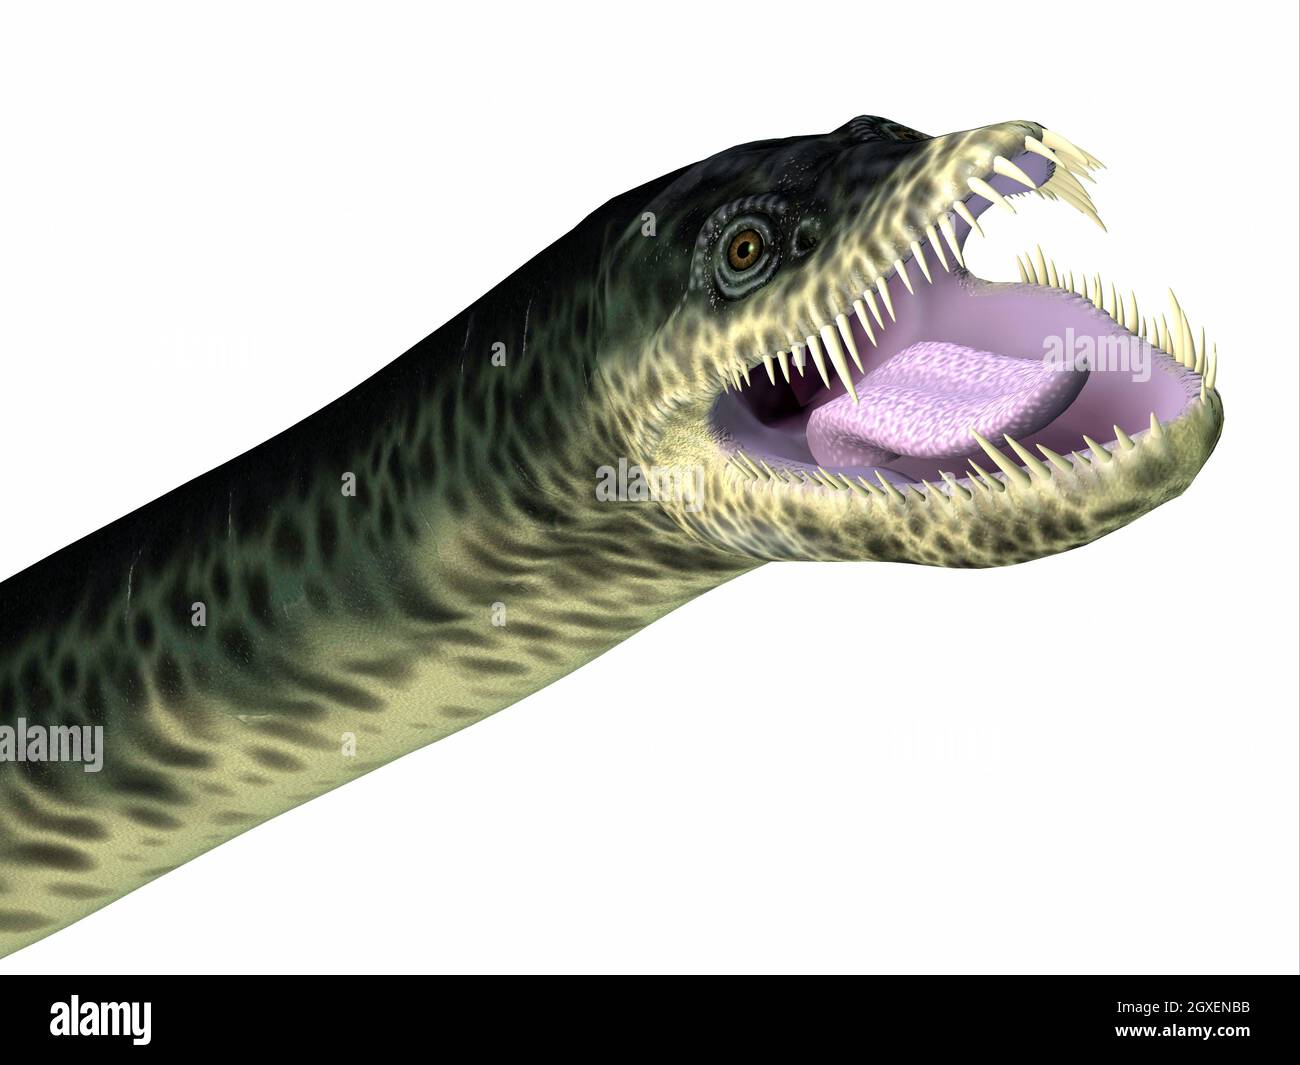 Styxosaurus fue un reptil depredador de Plesiosaurio marino que vivió en los mares de América del Norte durante el período Cretácico. Foto de stock